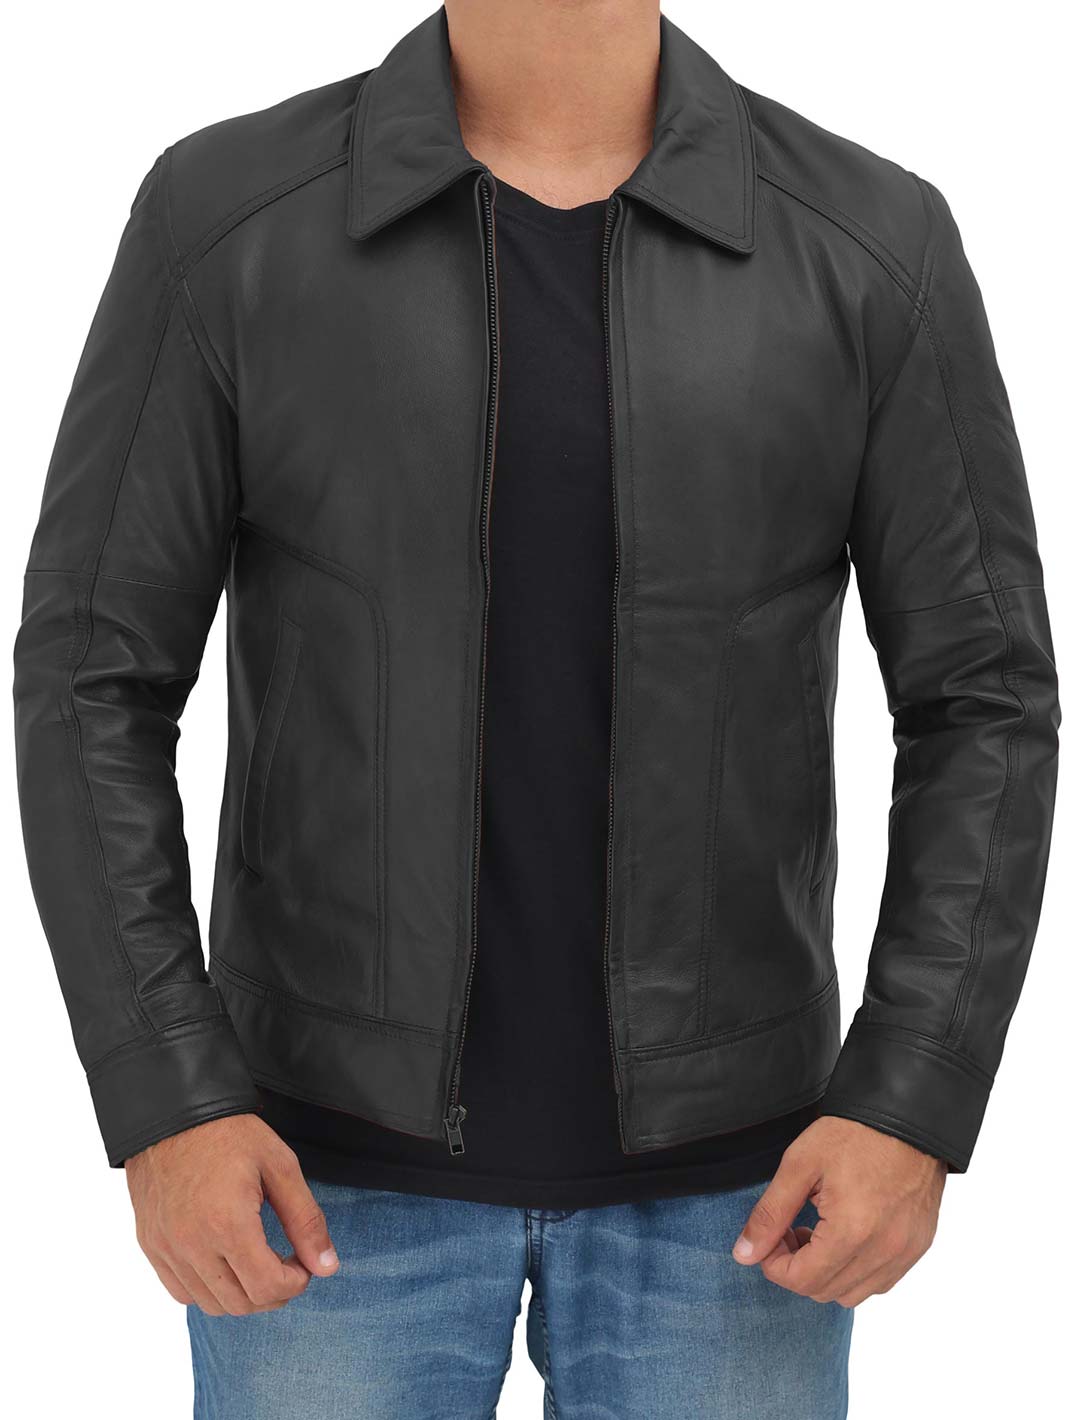 cognac leather jacket mens